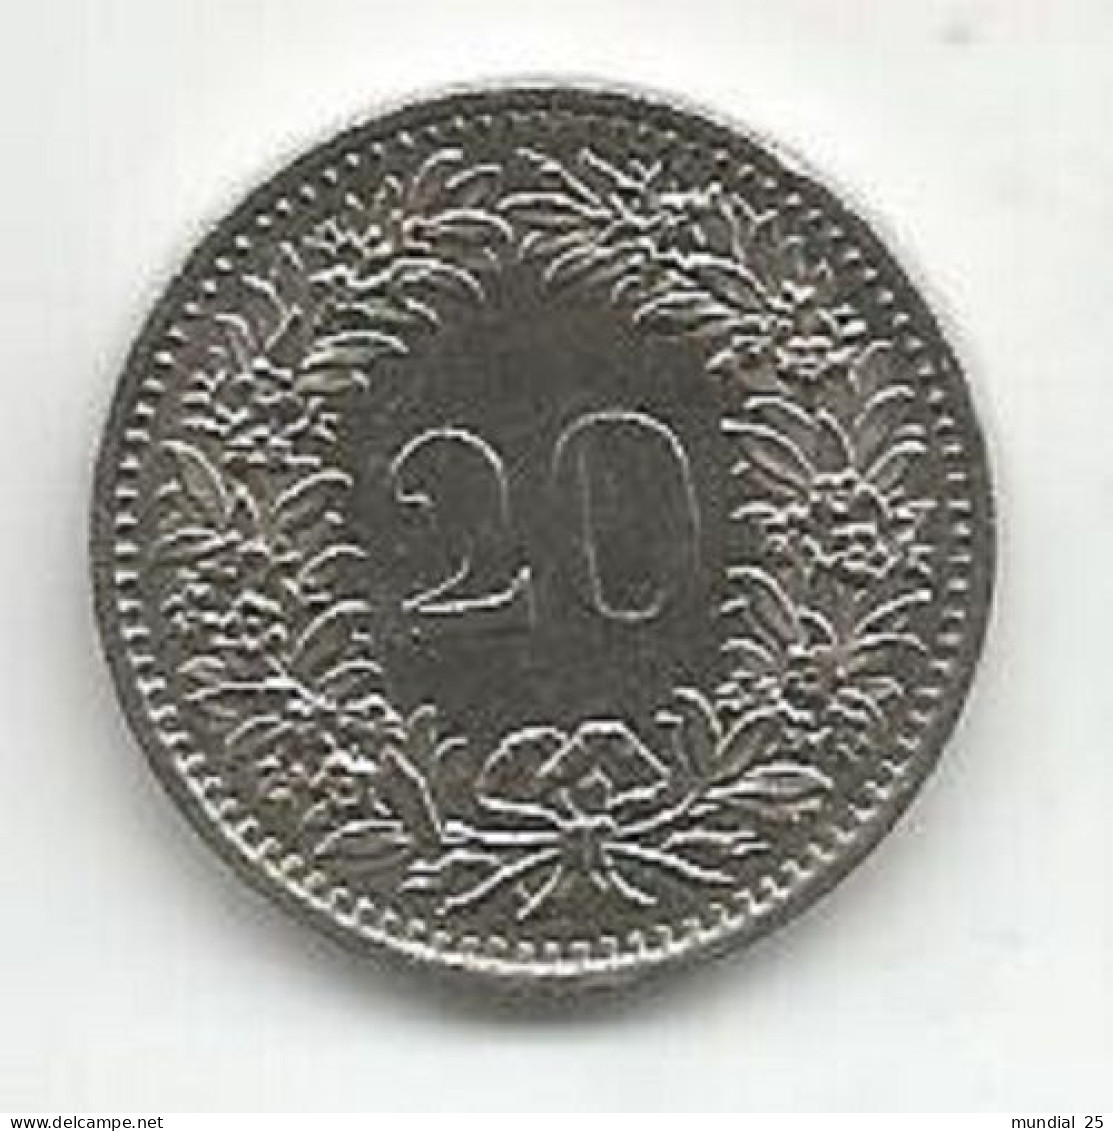 SWITZERLAND 20 RAPPEN 1977 - 20 Centimes / Rappen